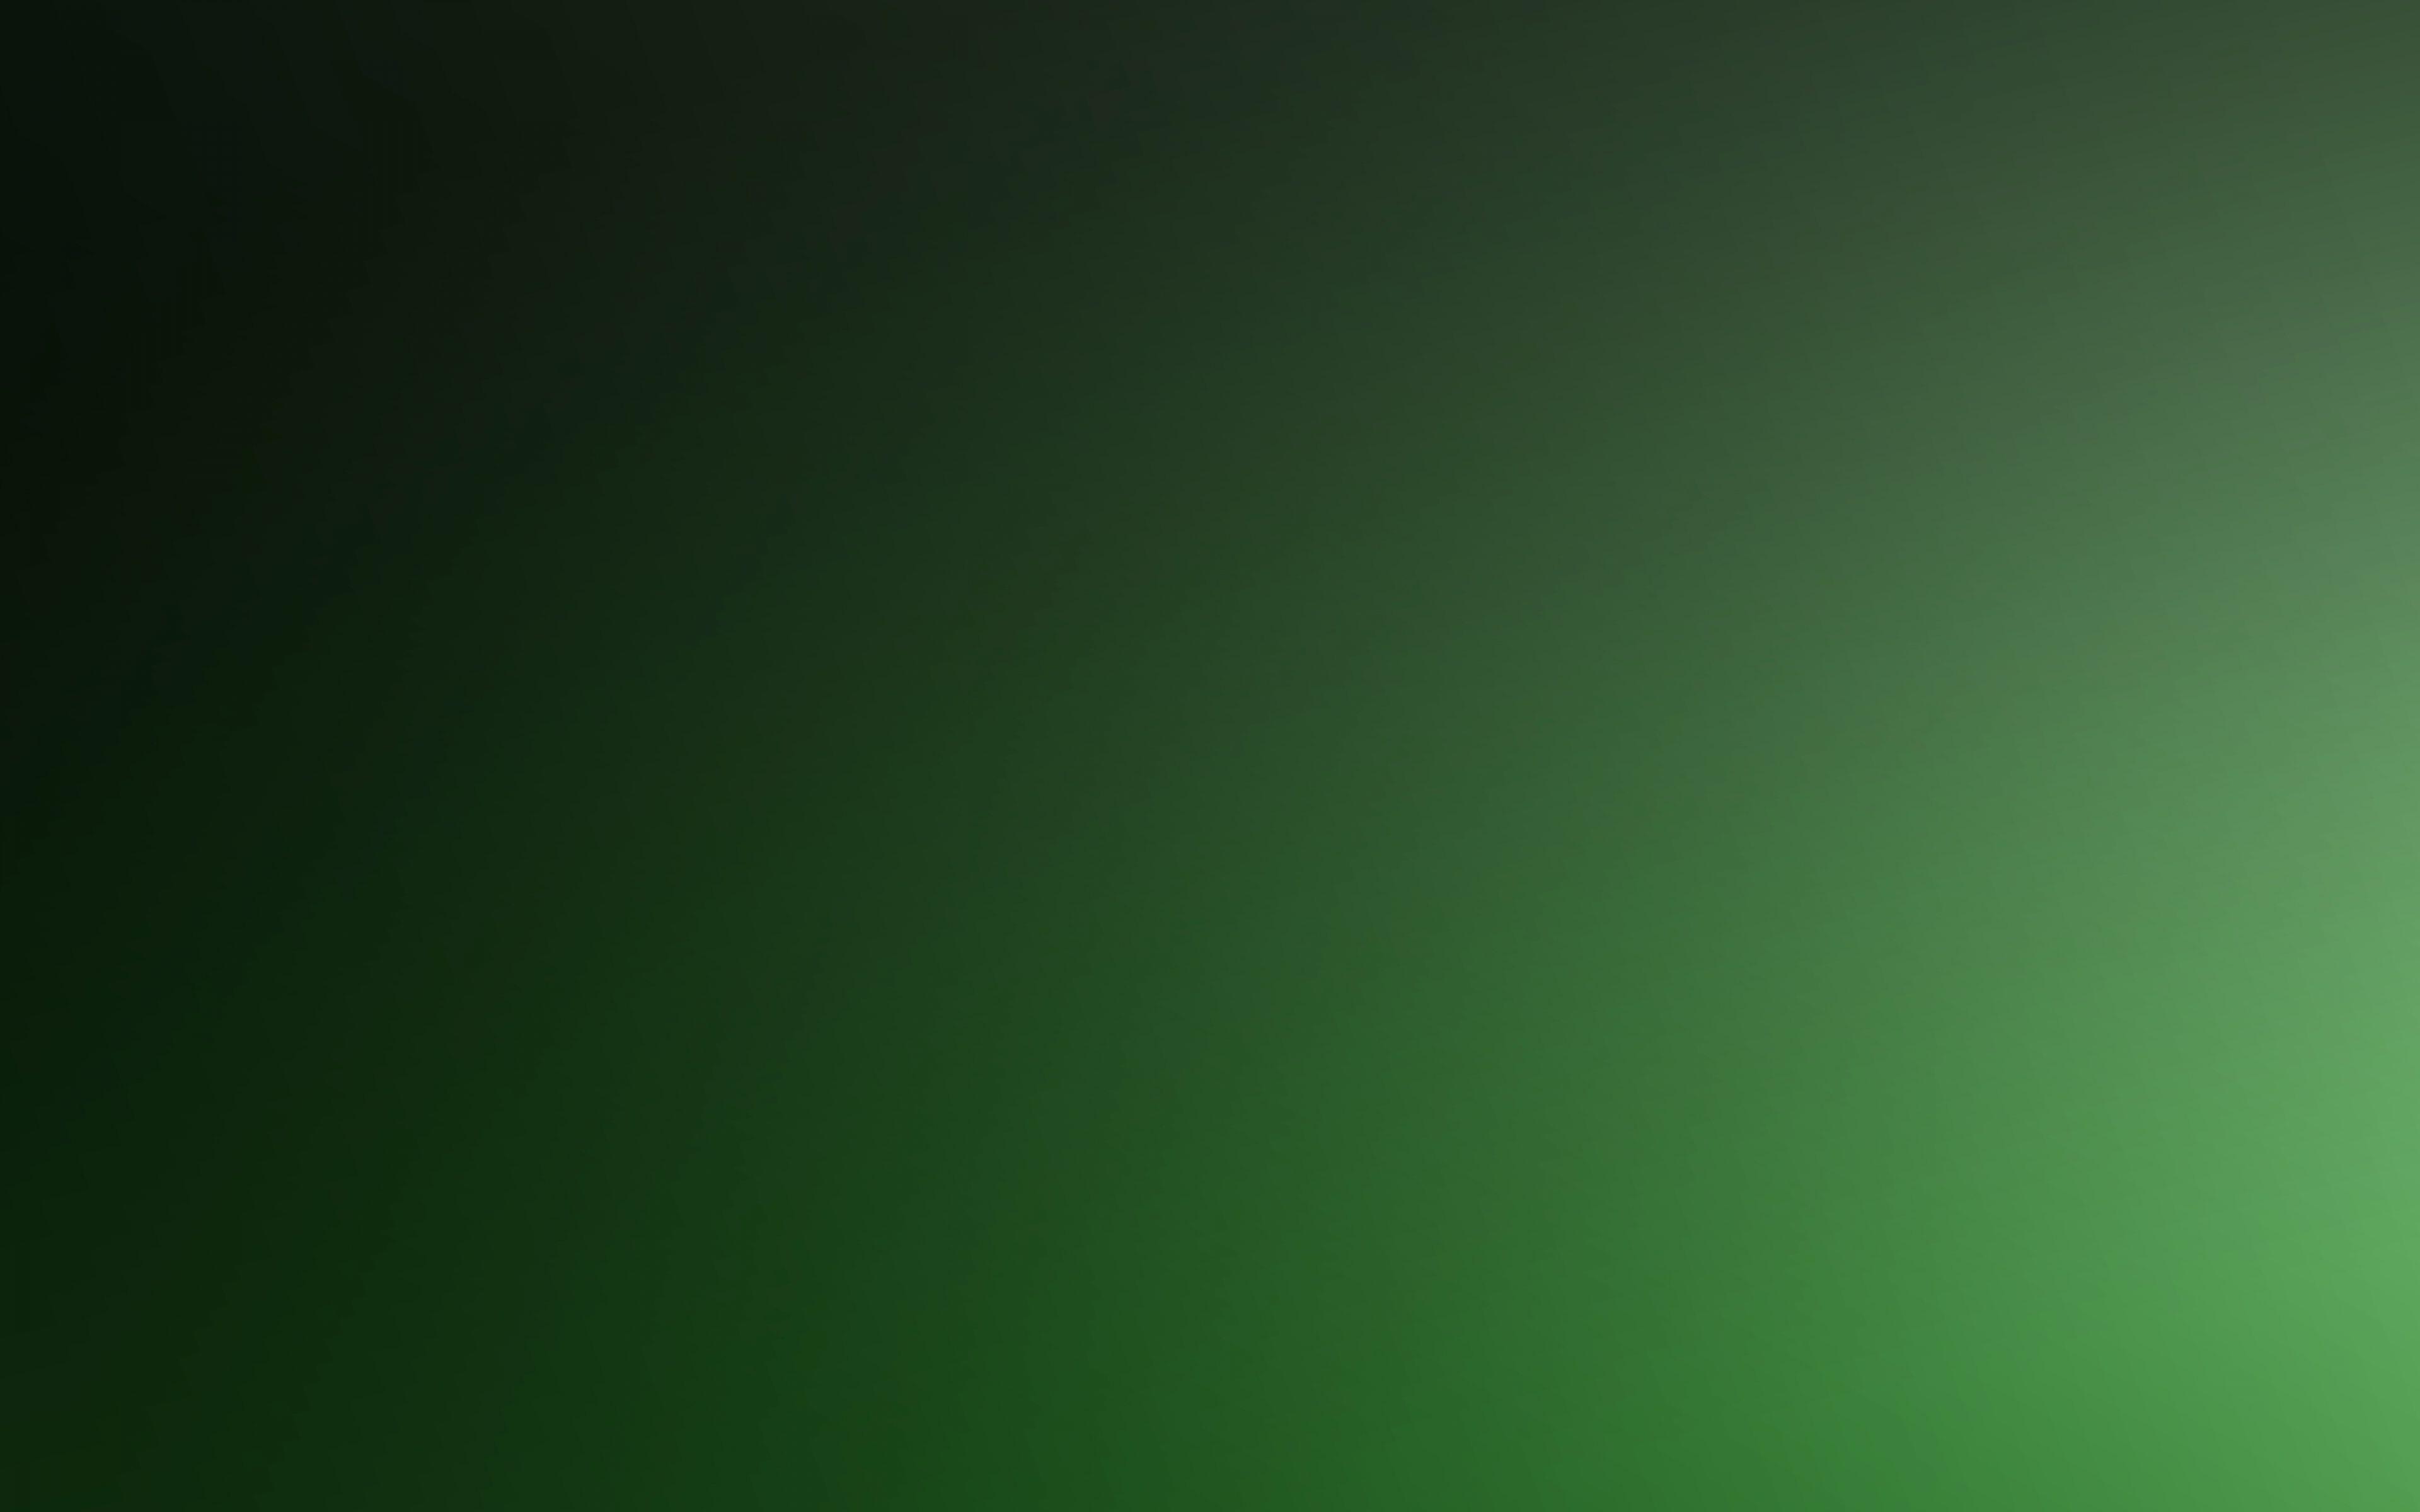 Green Gradient Wallpapers - Top Free Green Gradient Backgrounds